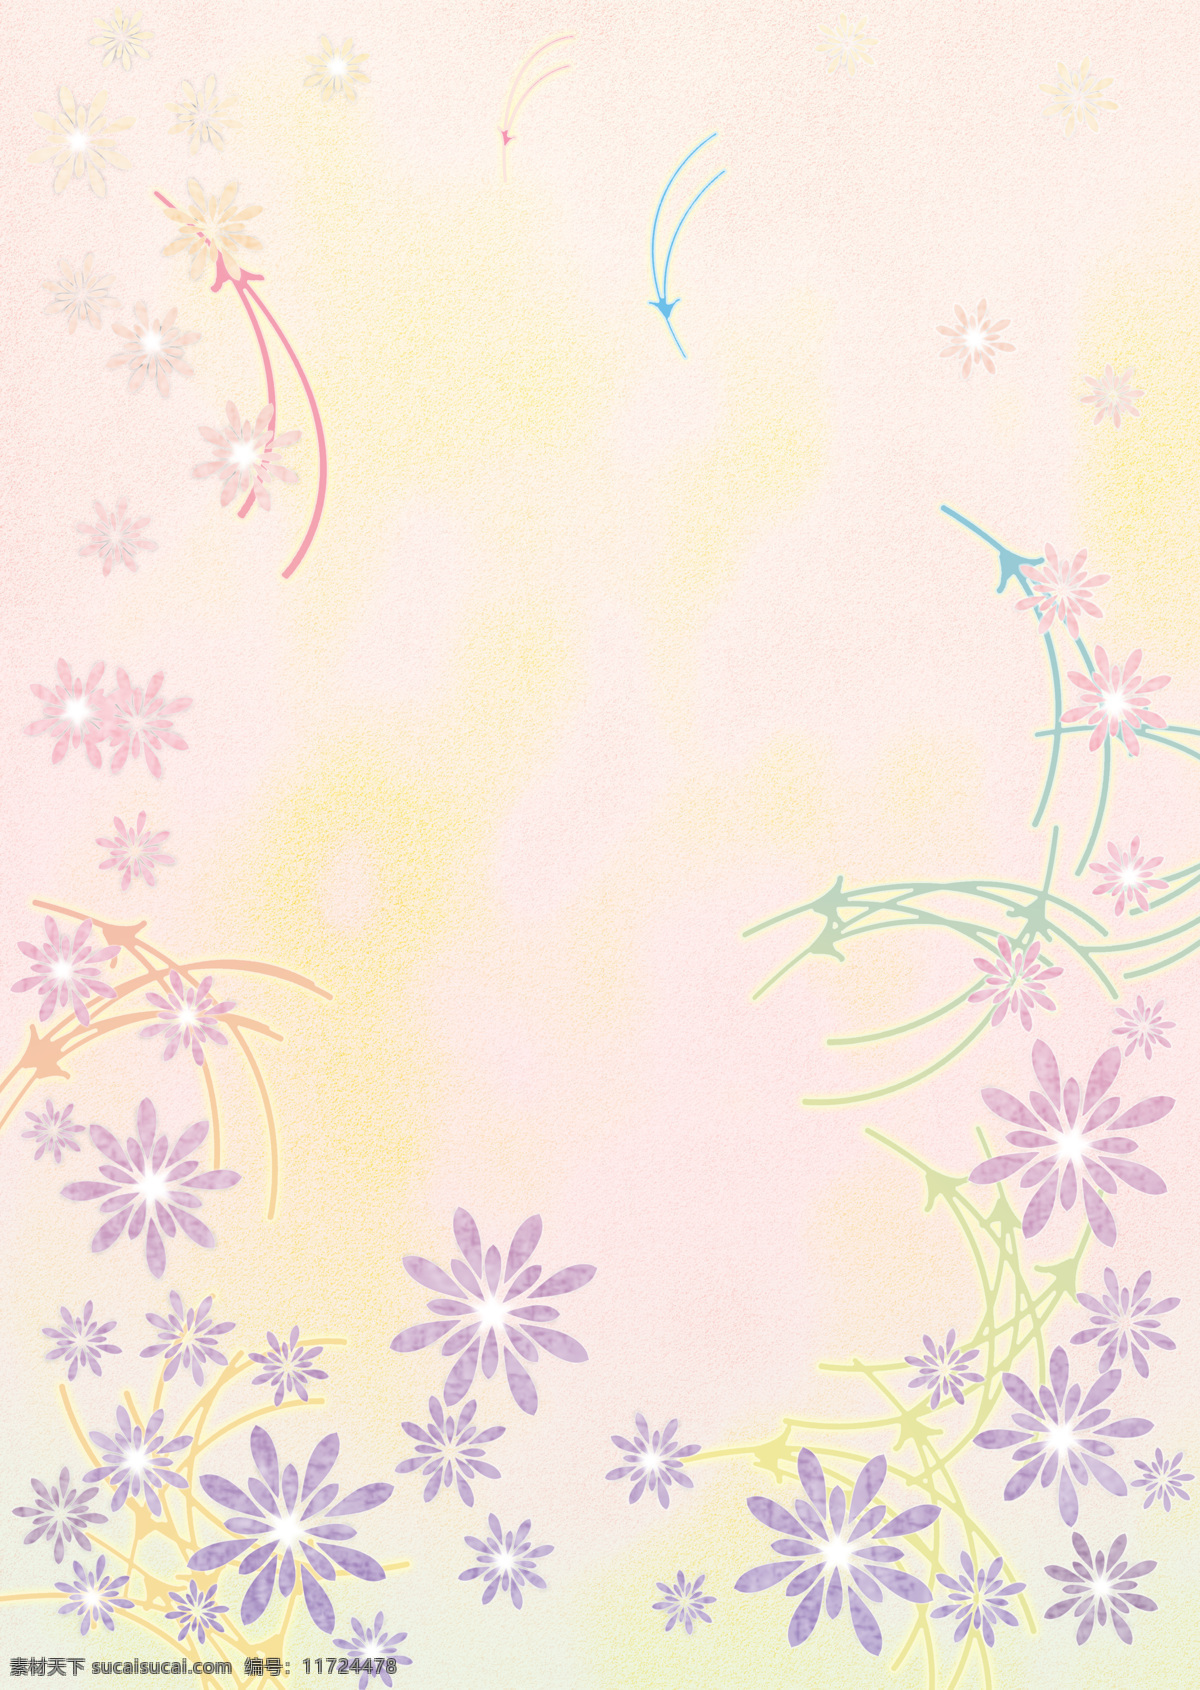 日式和风背景 日式 和风 背景 底纹 花朵 素雅 背景底纹 底纹边框